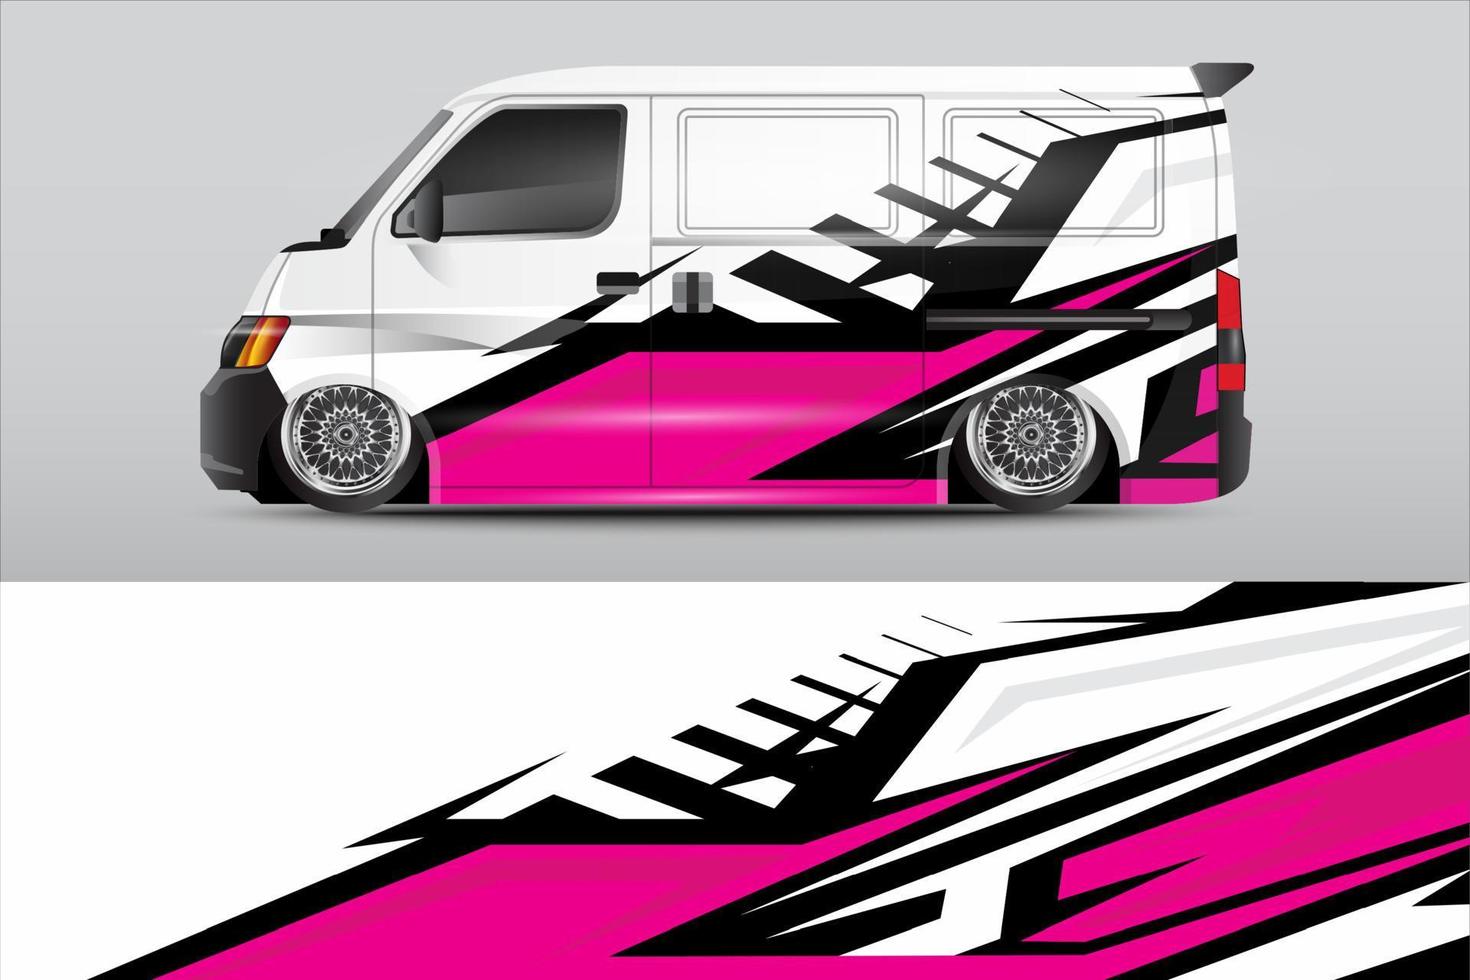 Rennwagen-Wrap-Design für Fahrzeug-Vinyl-Aufkleber und Aufkleber-Lackierung von Automobilunternehmen vektor